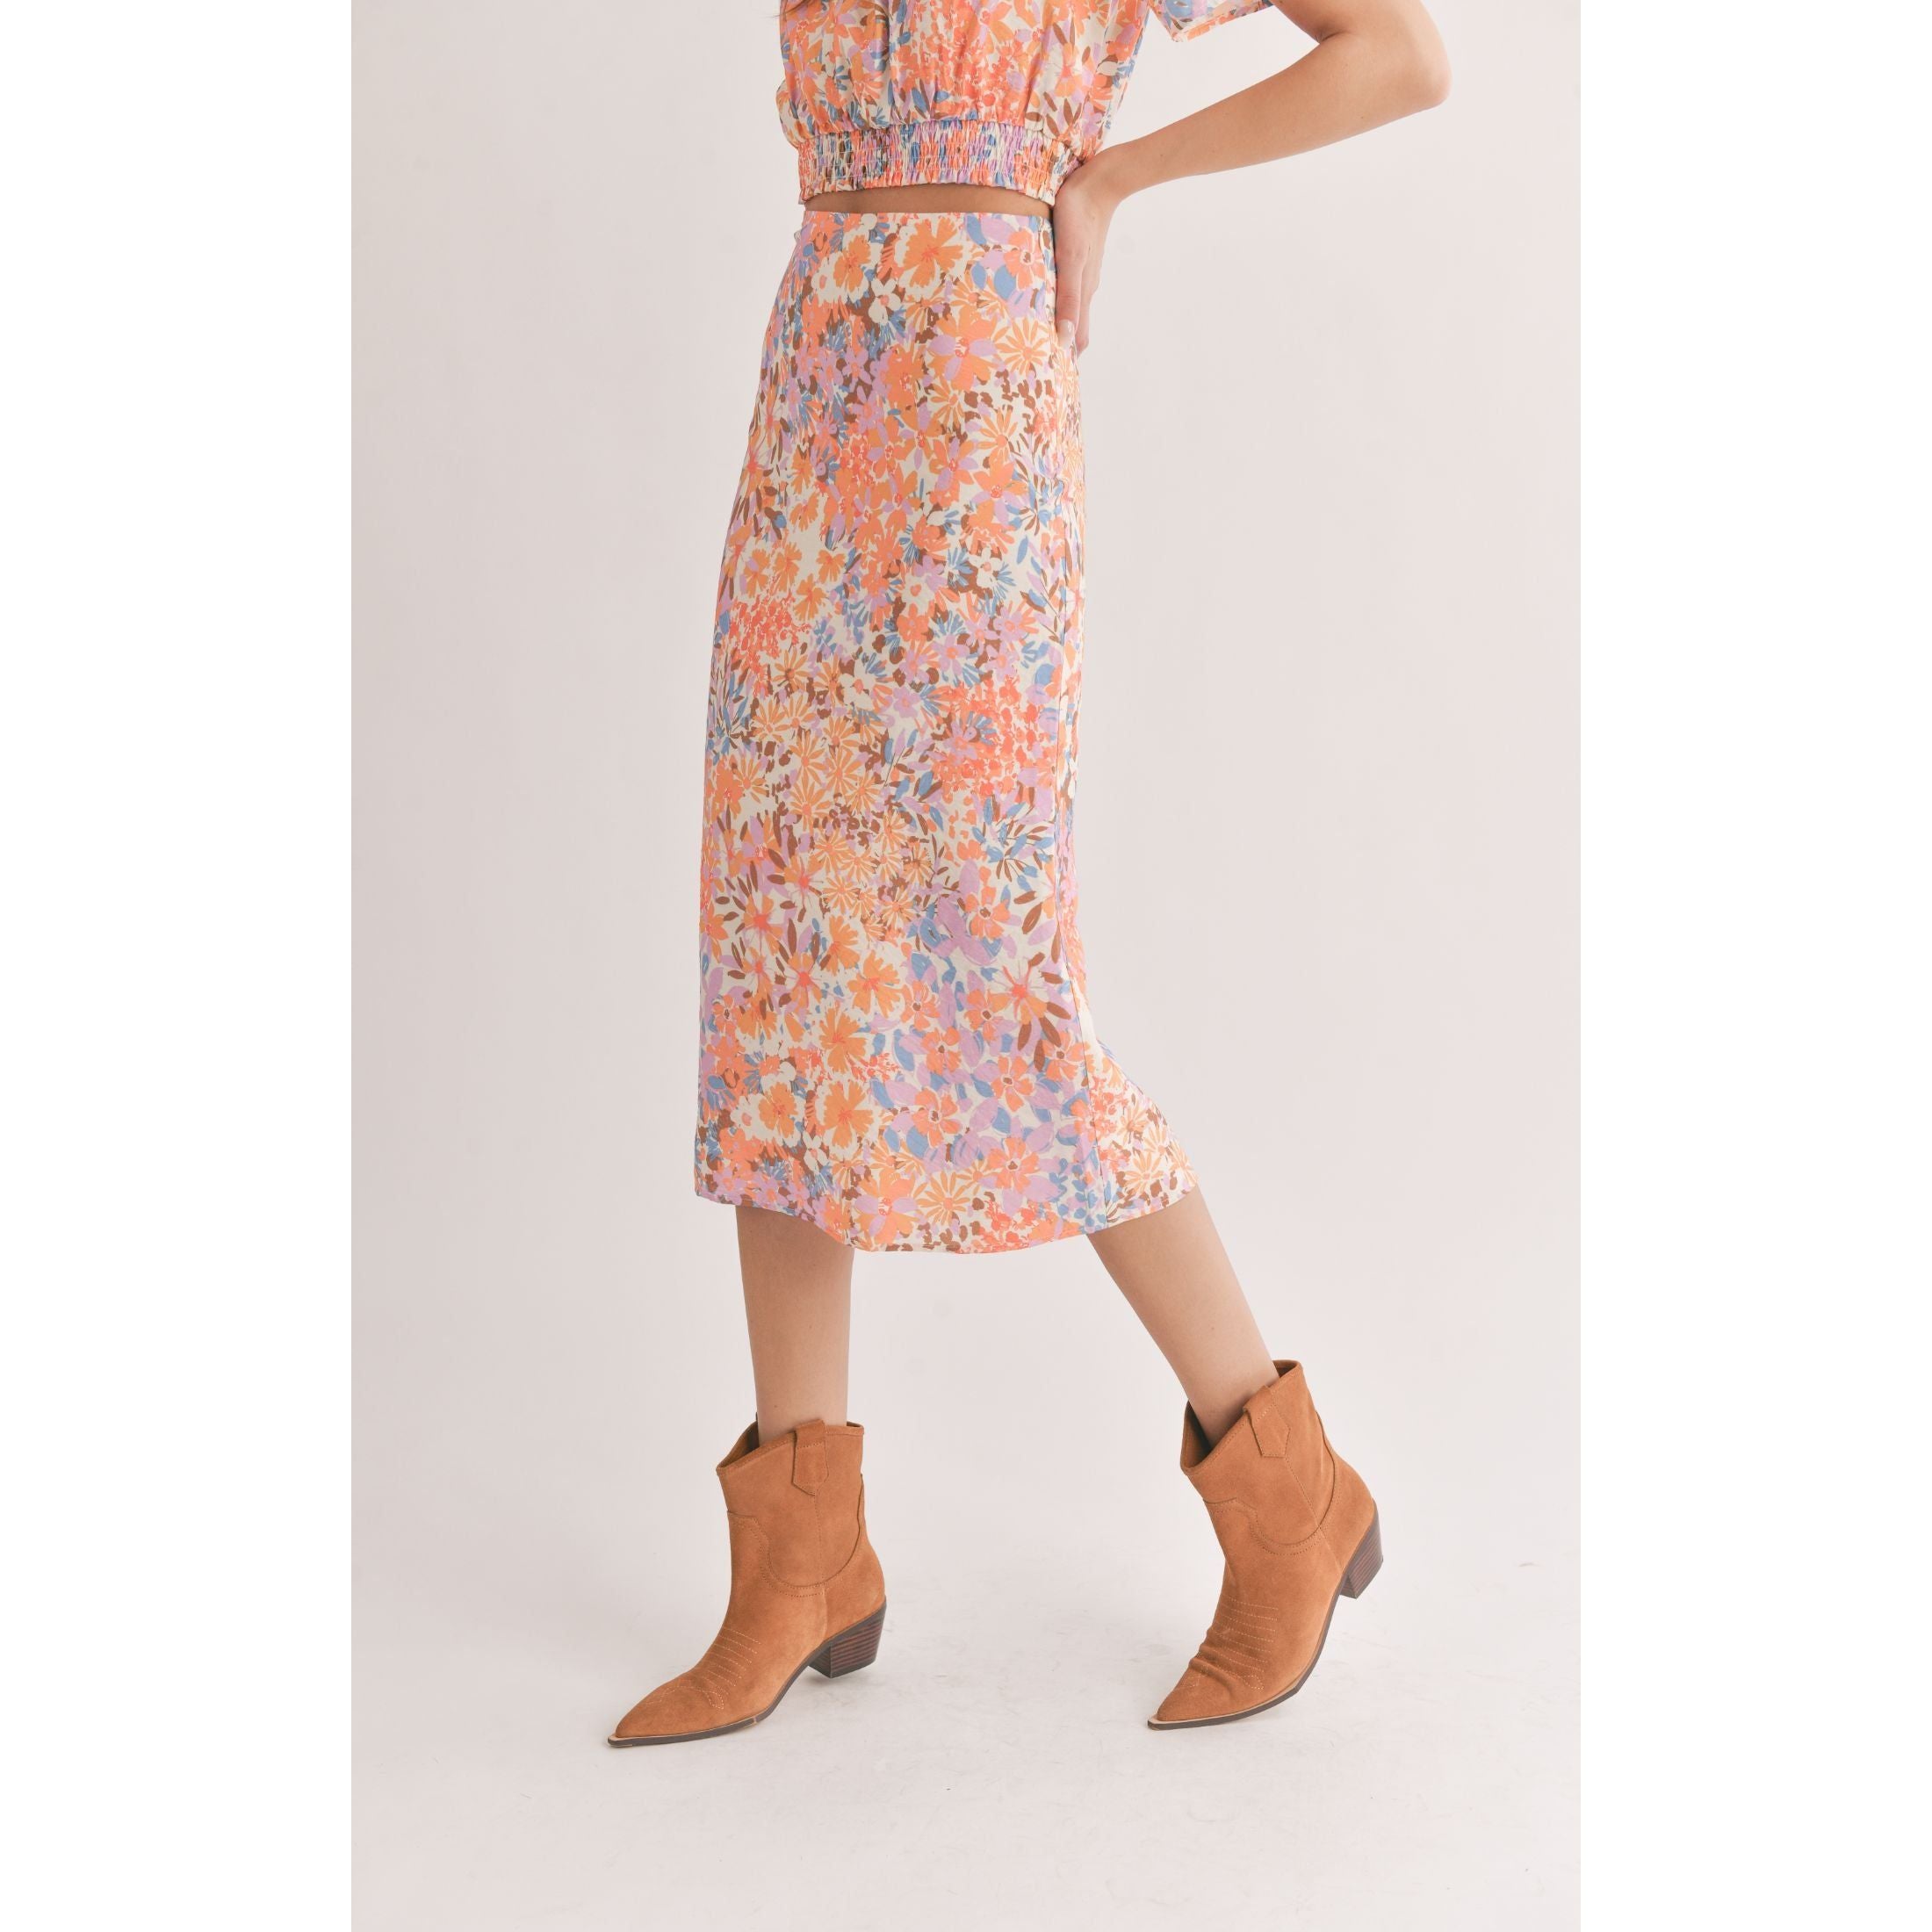 Sadie & Sage - Midi Skirt in Multi Floral